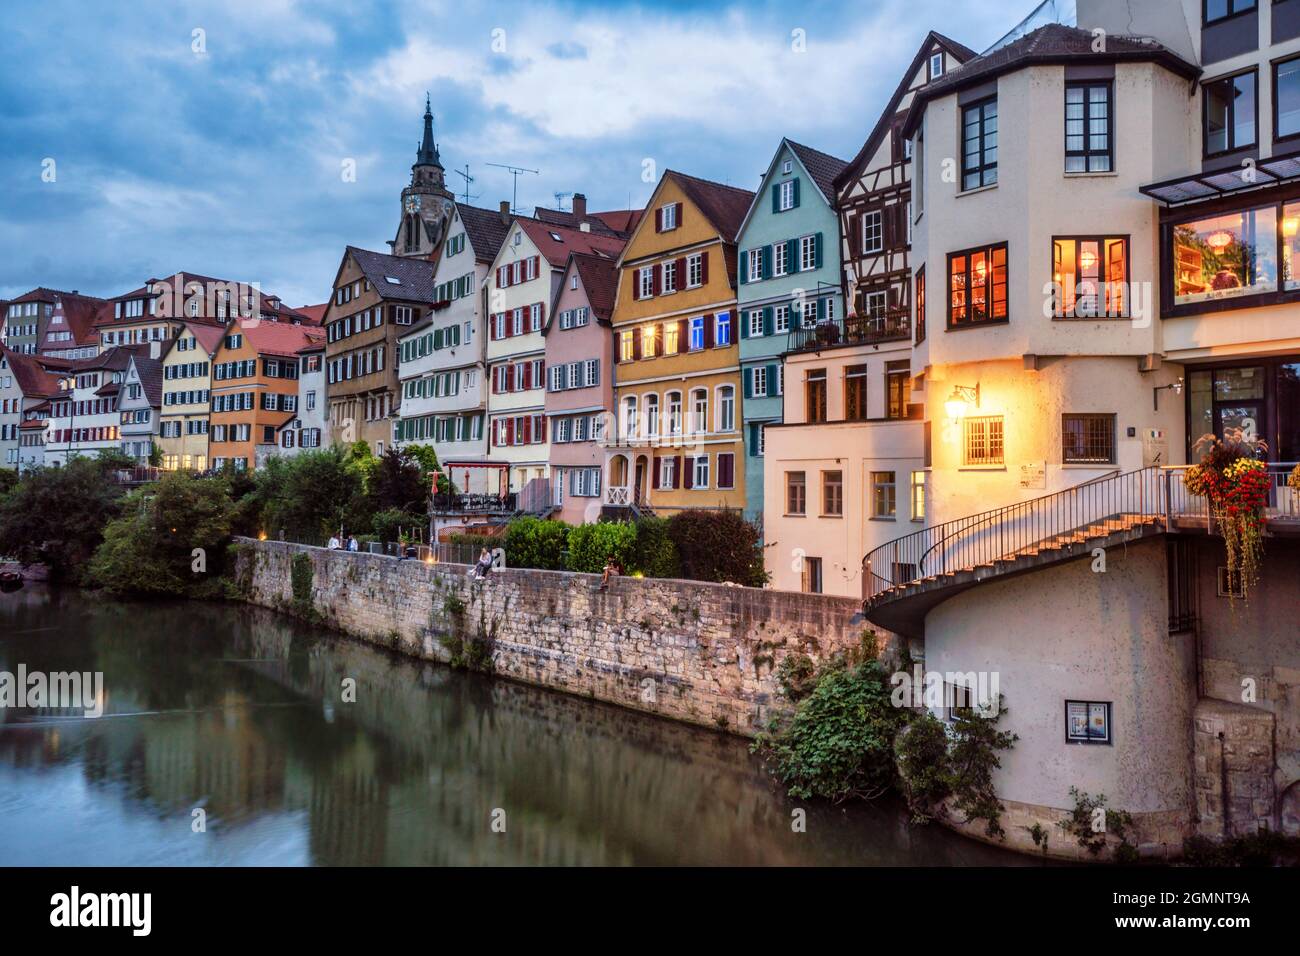 Altstadtfassaden in Tübingen am Neckar, Blick von der Eberharsbrücke, Blaue Stunde, Tübingen, Altstadtfassaden , Baden-Württemberg, Deutschland, Europ Foto Stock